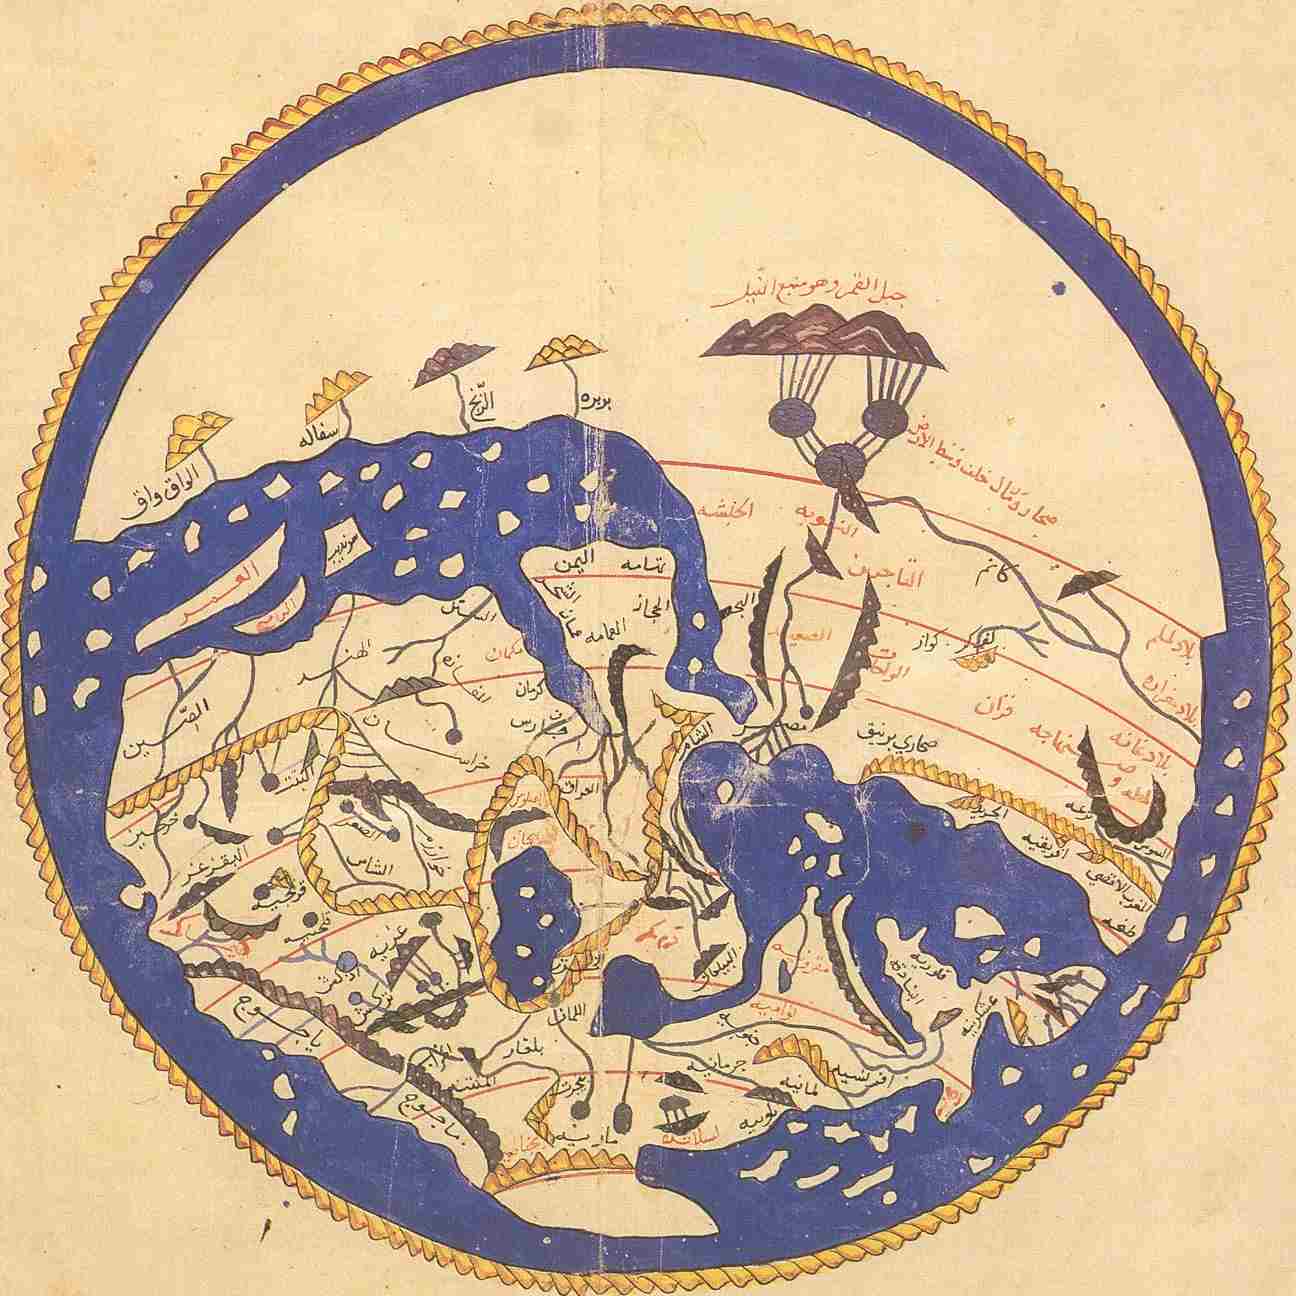 Al-Idrisi, Ilmuwan Muslim yang Pertama Kali Membuat Peta Dunia